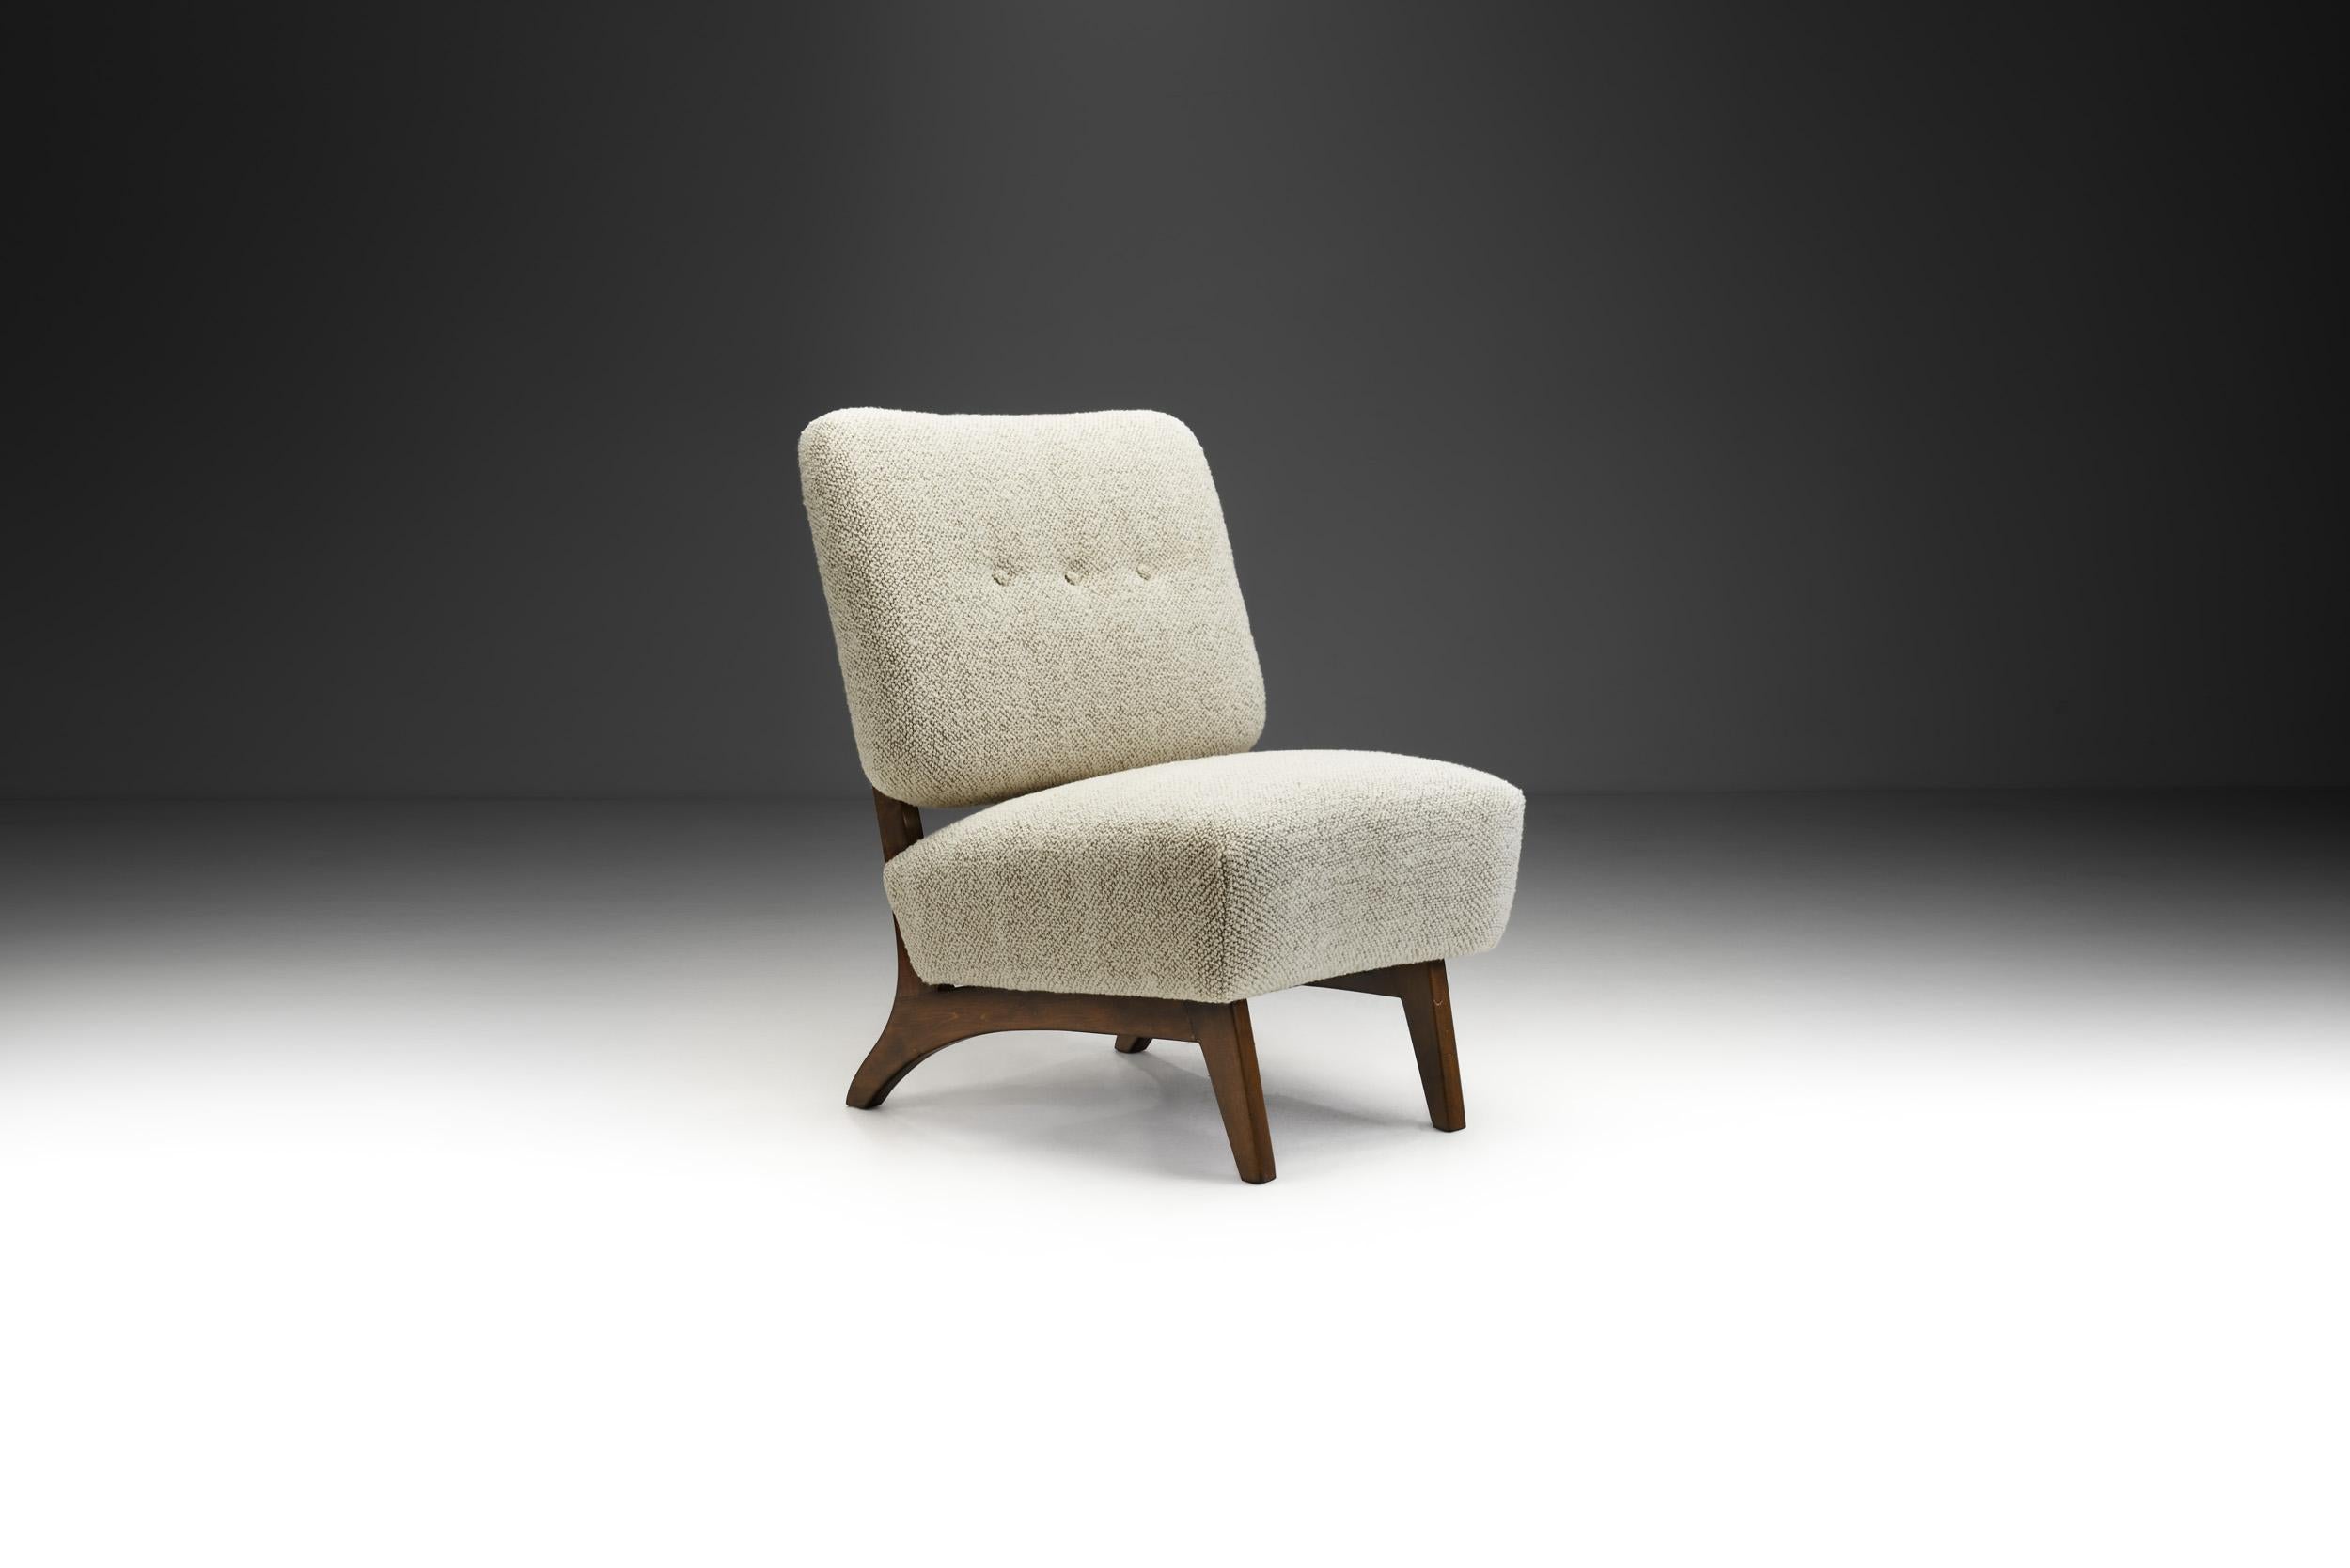 Diese wunderbare Hommage an das finnische Design der Jahrhundertmitte ist der Sessel Susanna, der von Lahden Lepokalusto entworfen und in den 1950er Jahren von Aake Antilla gestaltet wurde. Berühmt für seine Federung und Struktur, wurde dieses